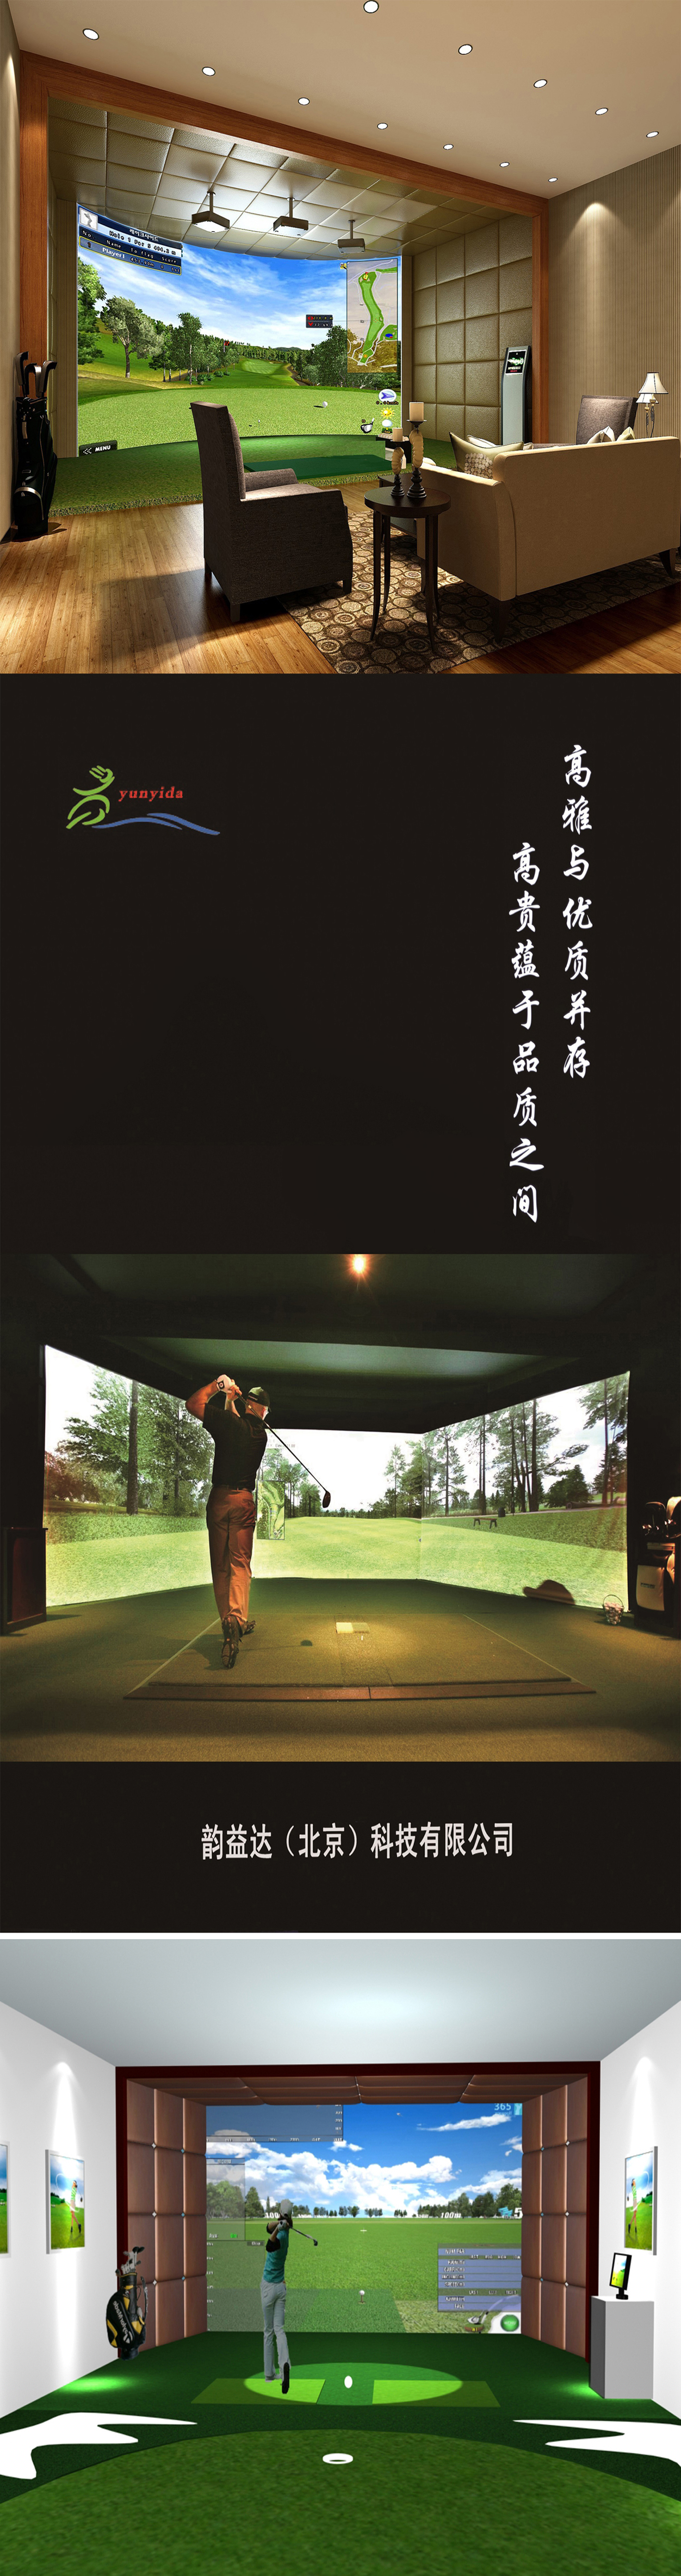 高尔夫模拟设备球场 2.jpg